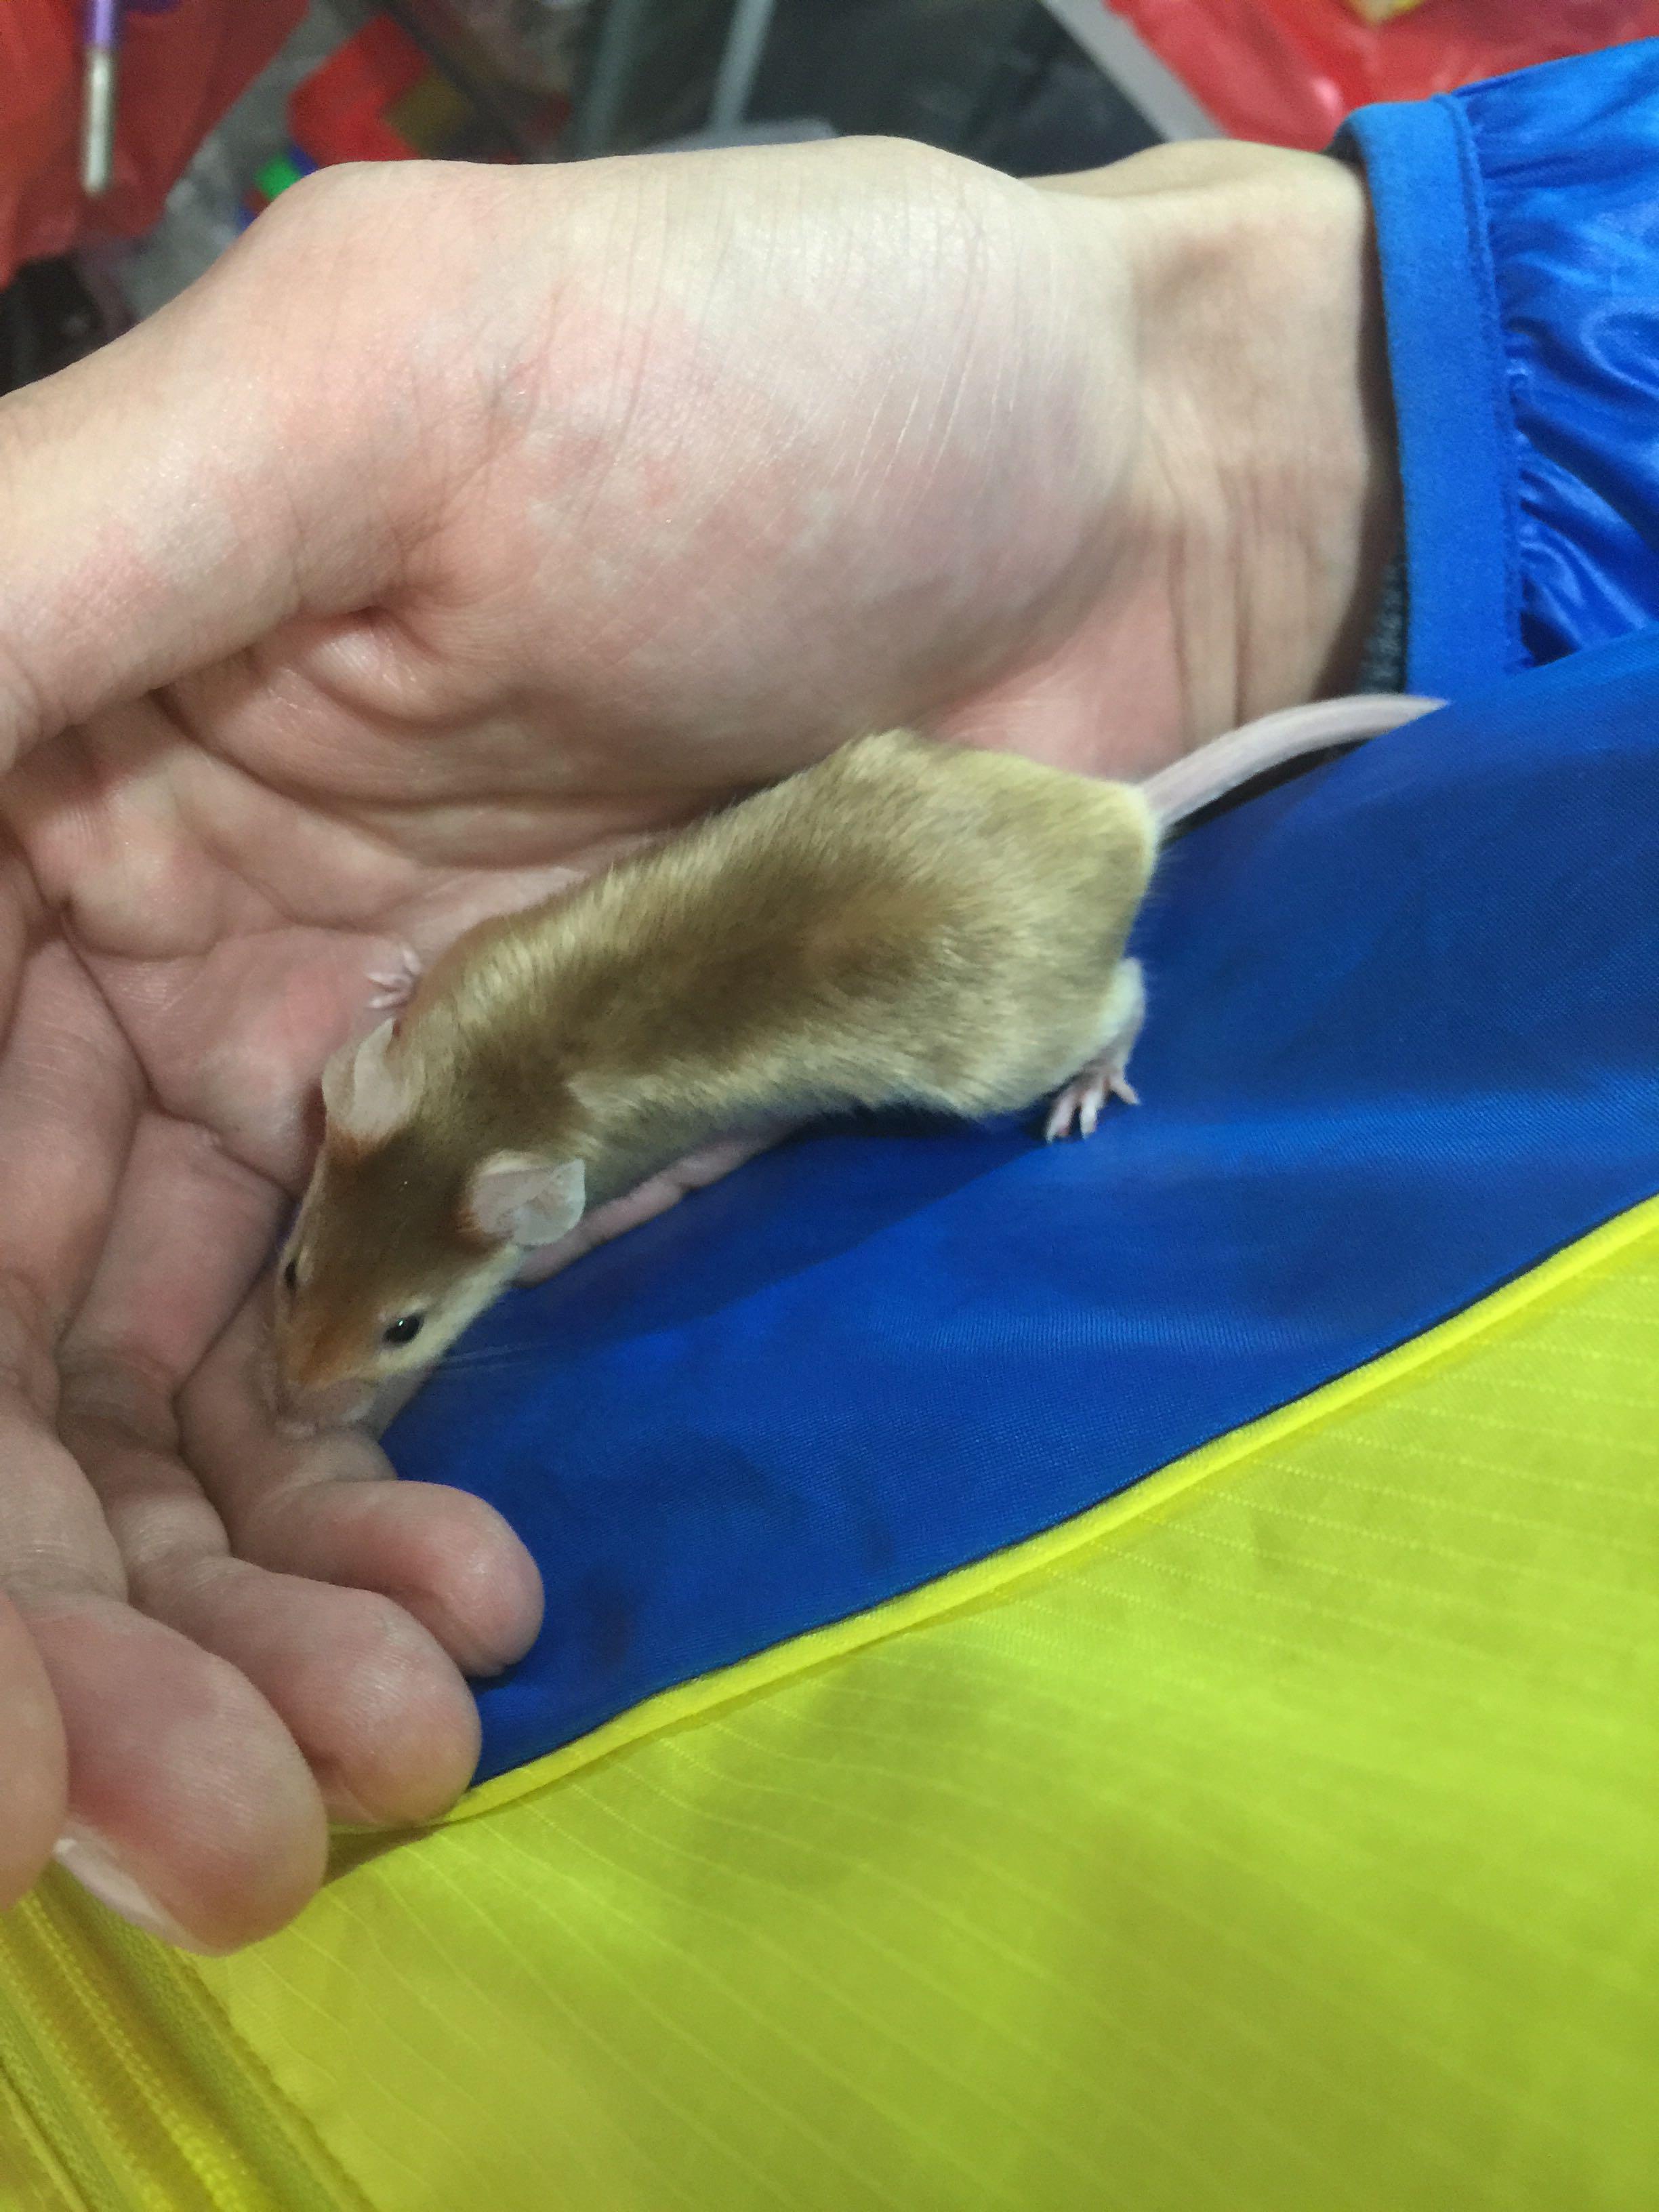 这个老鼠叫什么名字?金色,尾巴长,红眼睛?